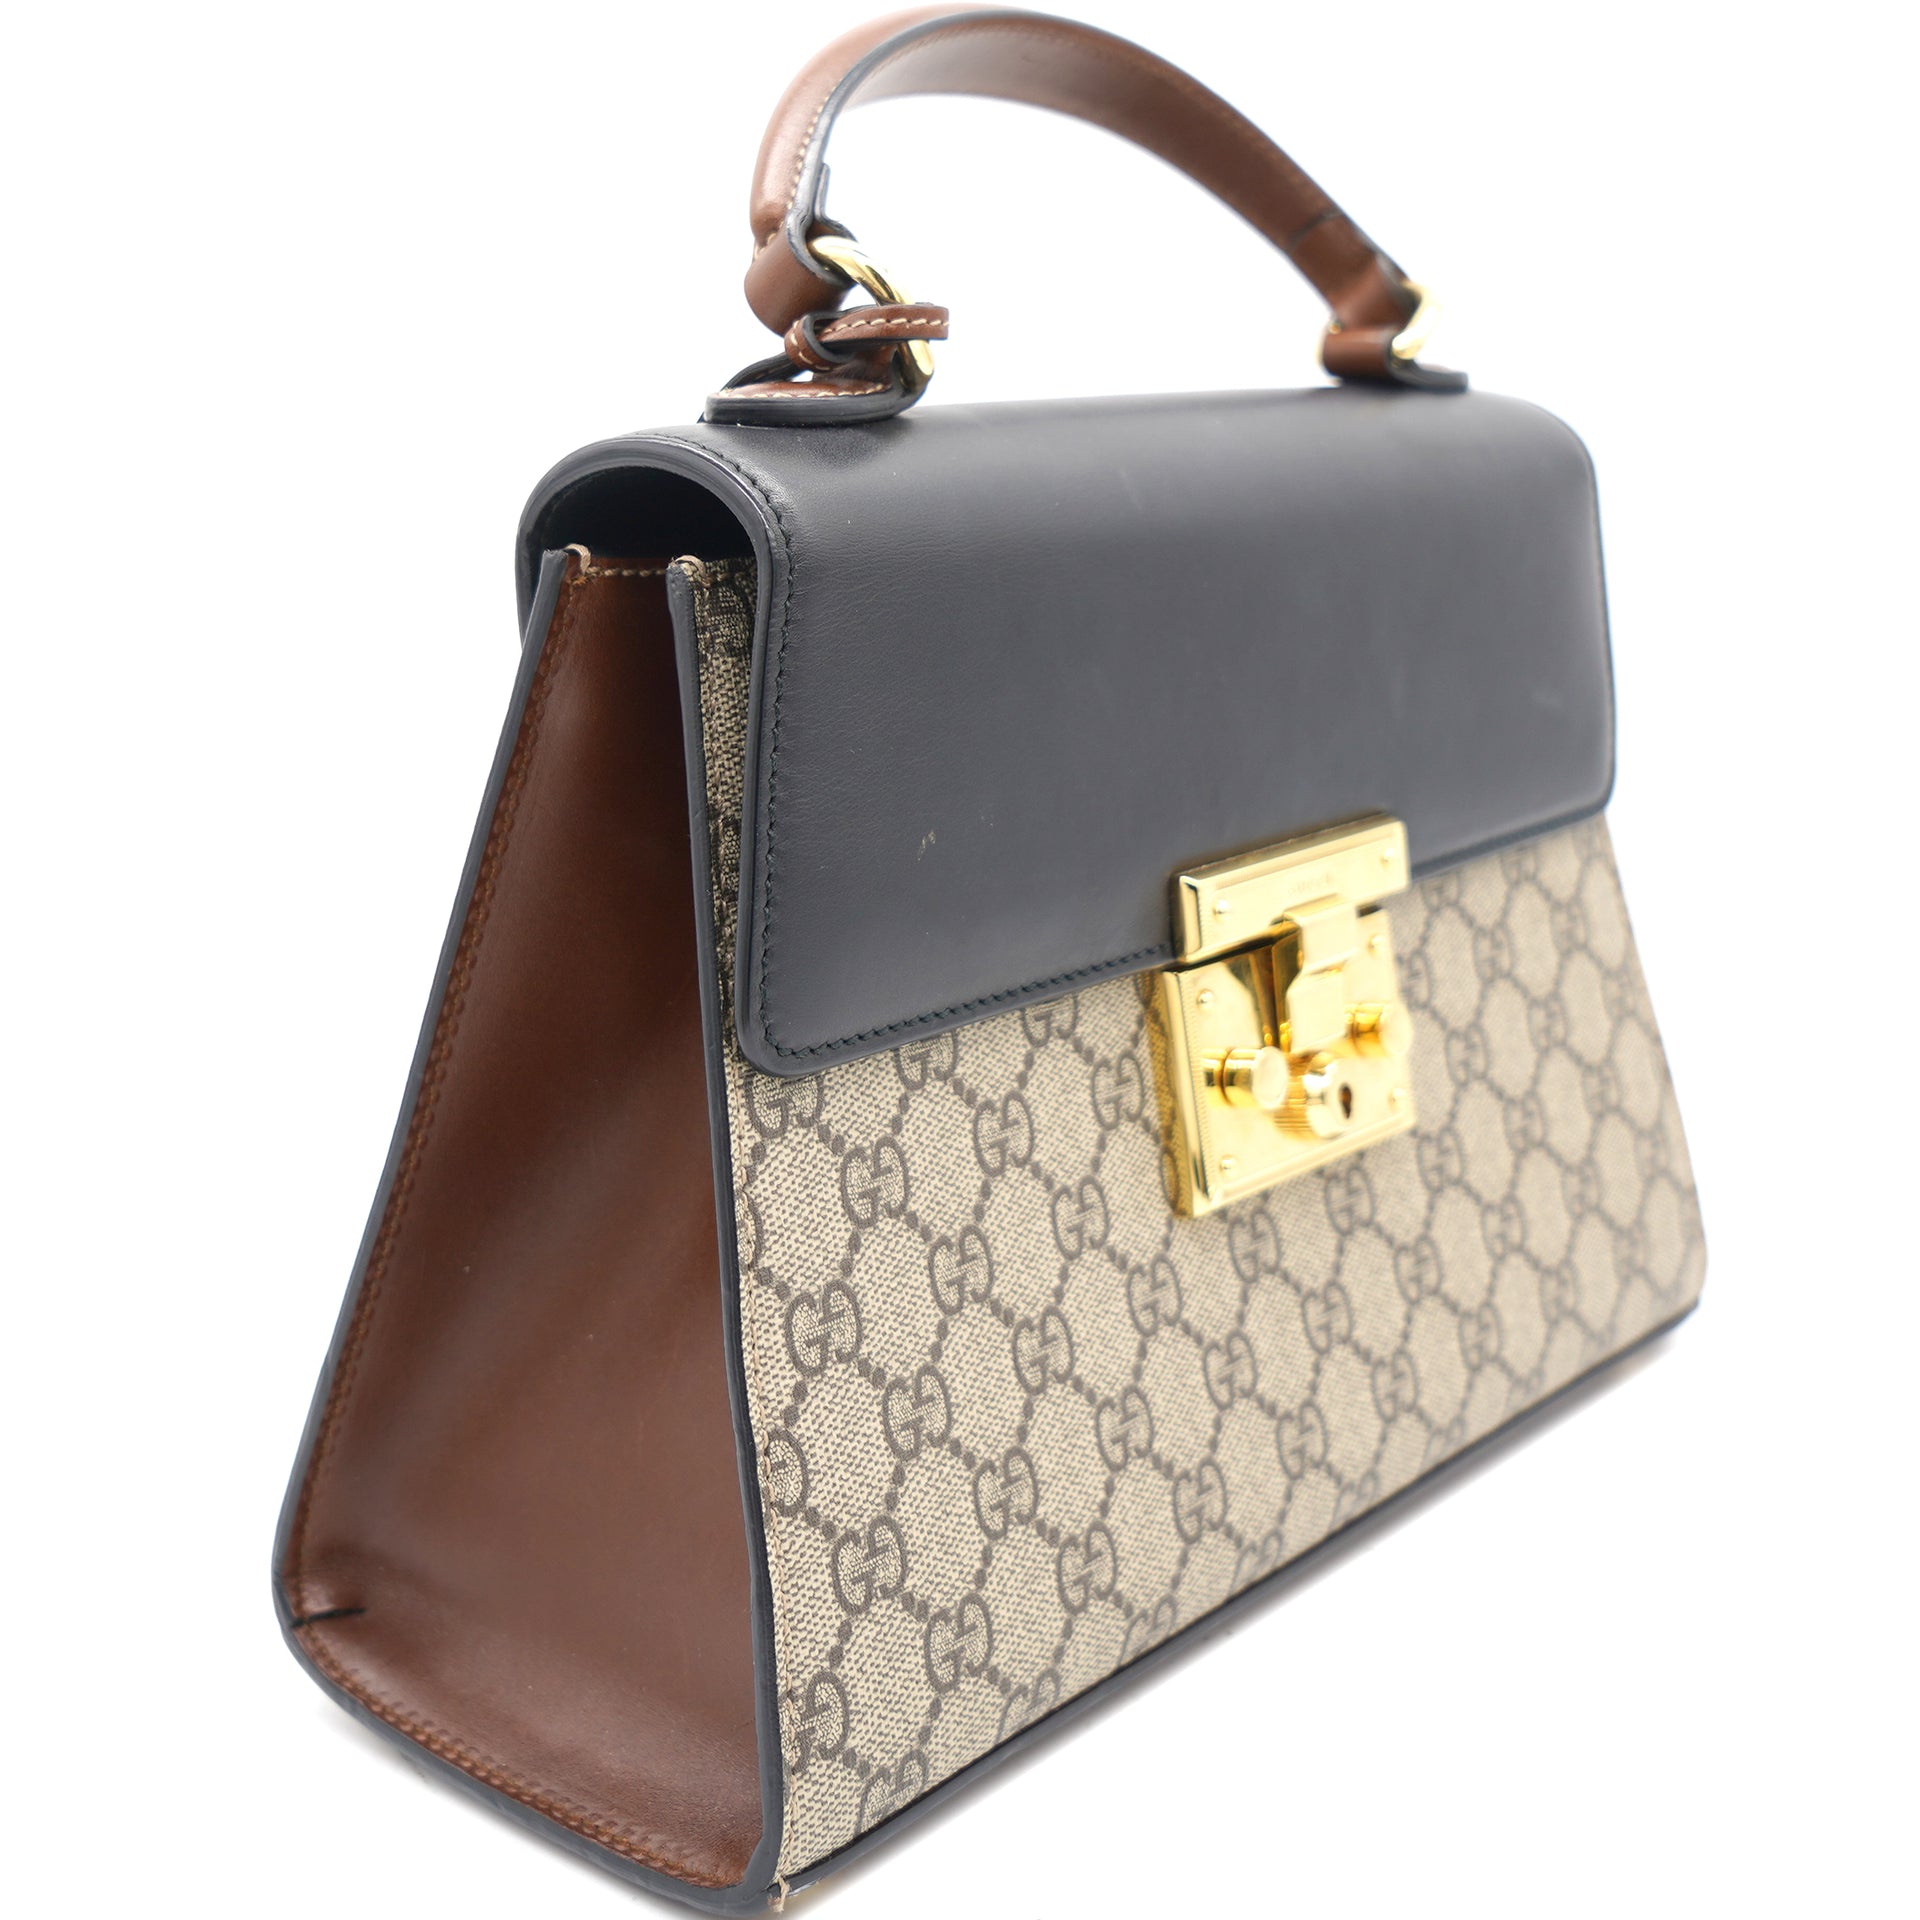 Gucci GG Supreme Small Padlock Handle Bag